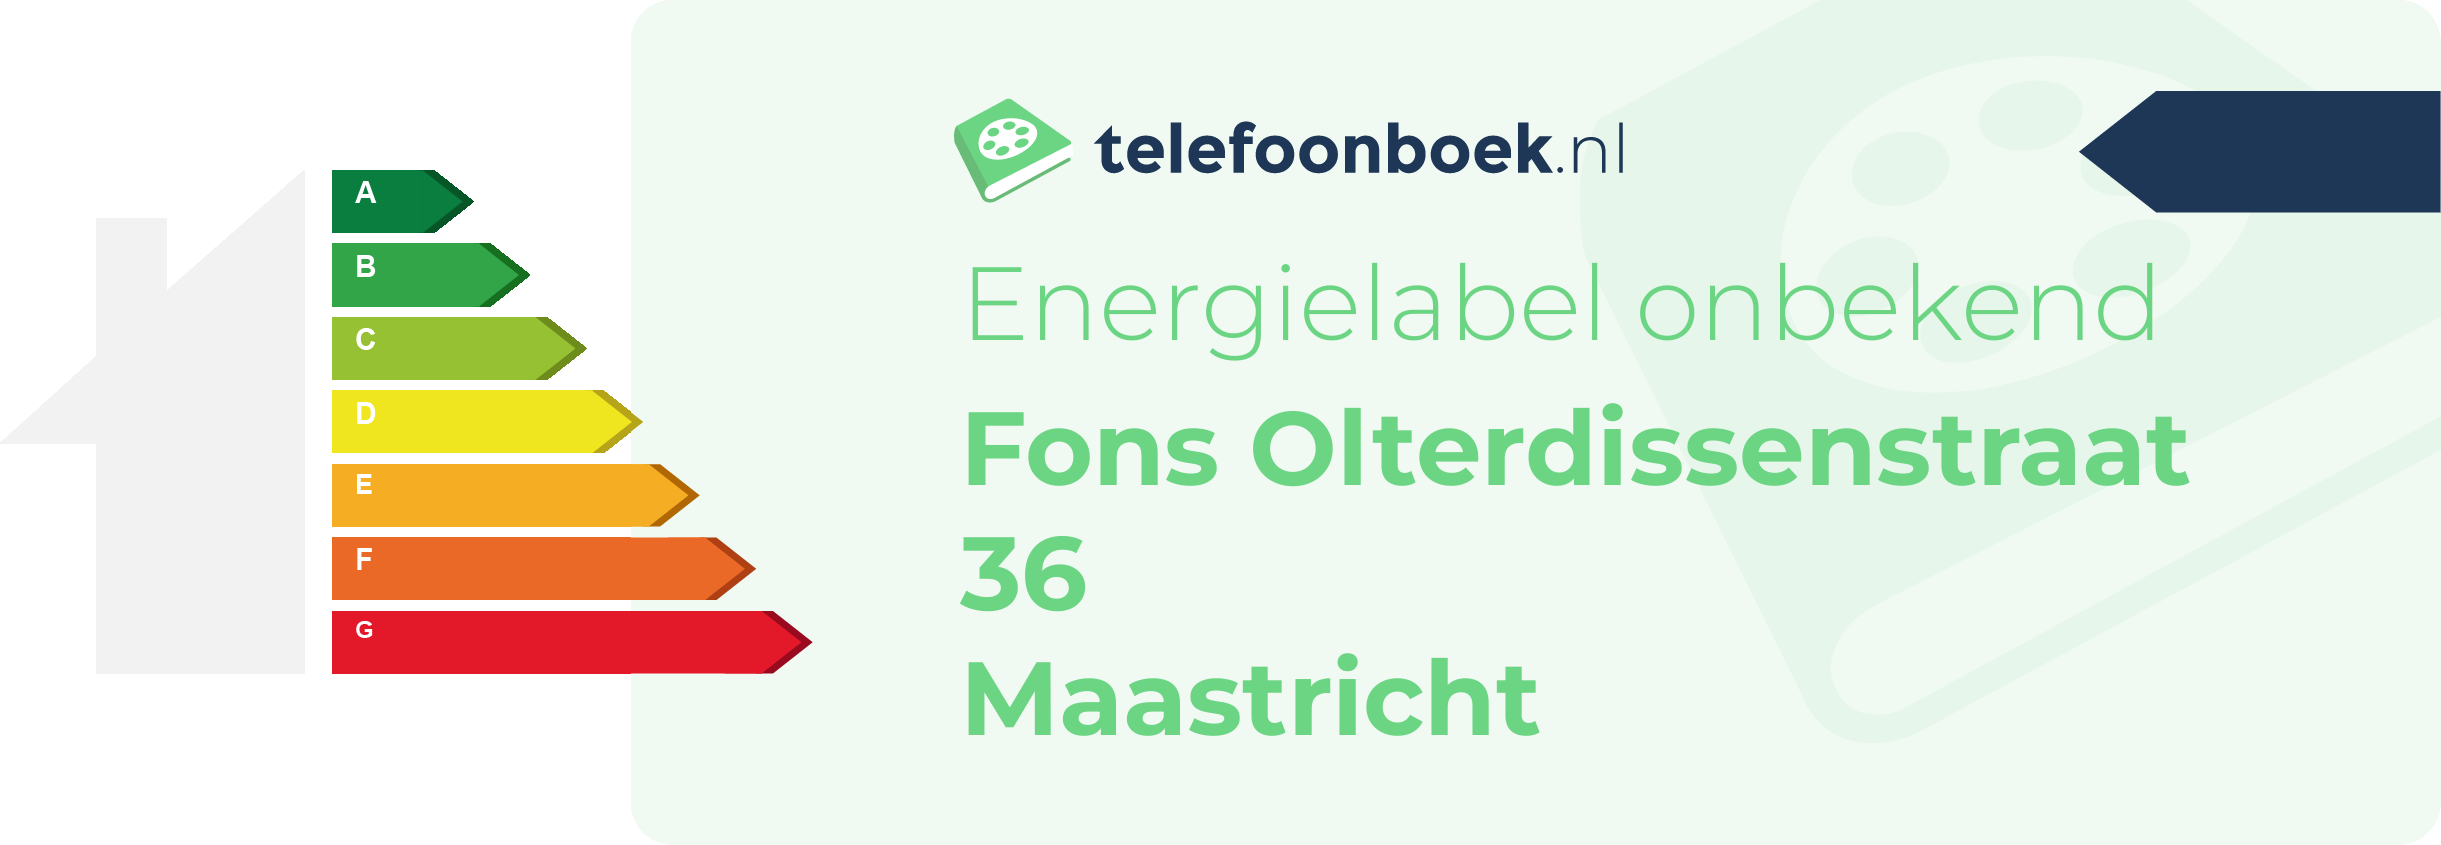 Energielabel Fons Olterdissenstraat 36 Maastricht